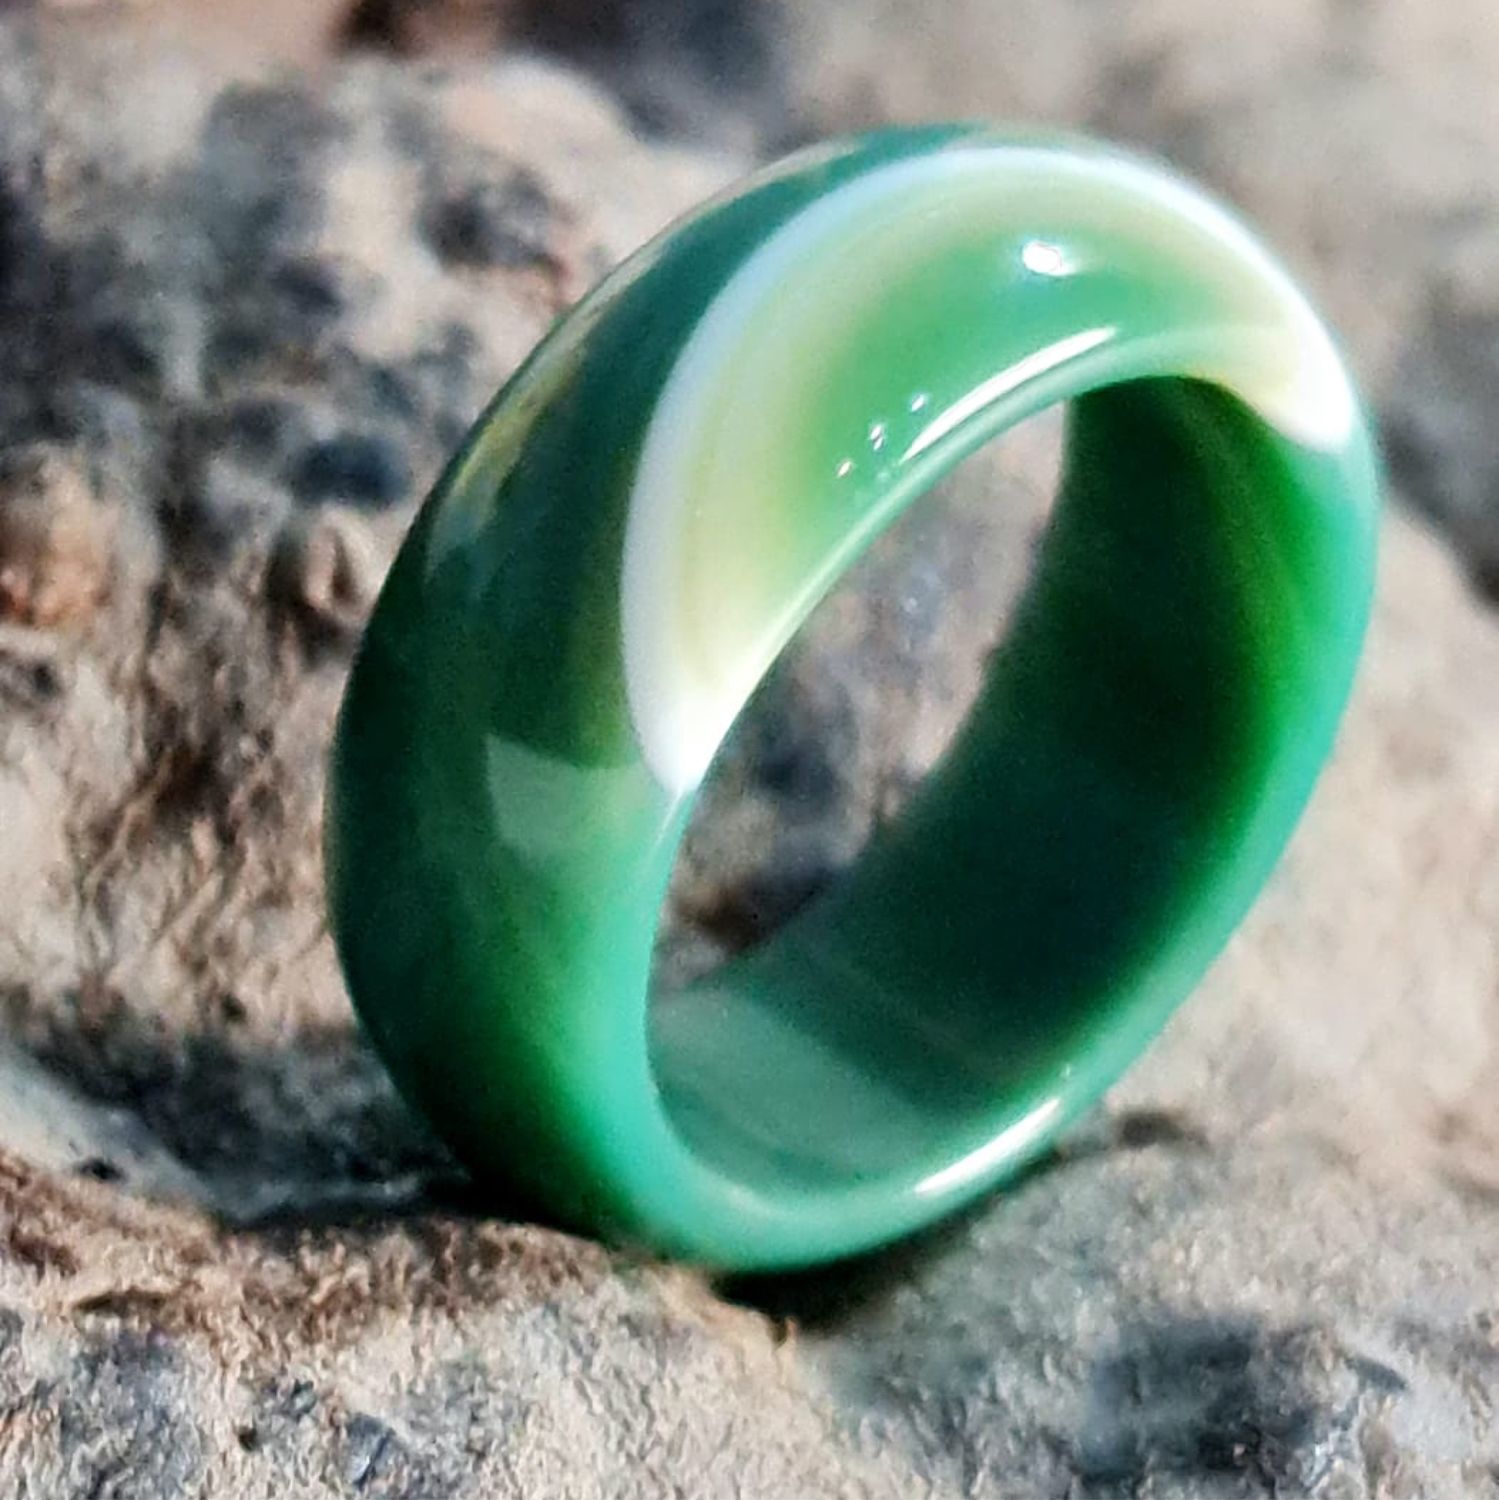 Кольцо с зеленым агатом